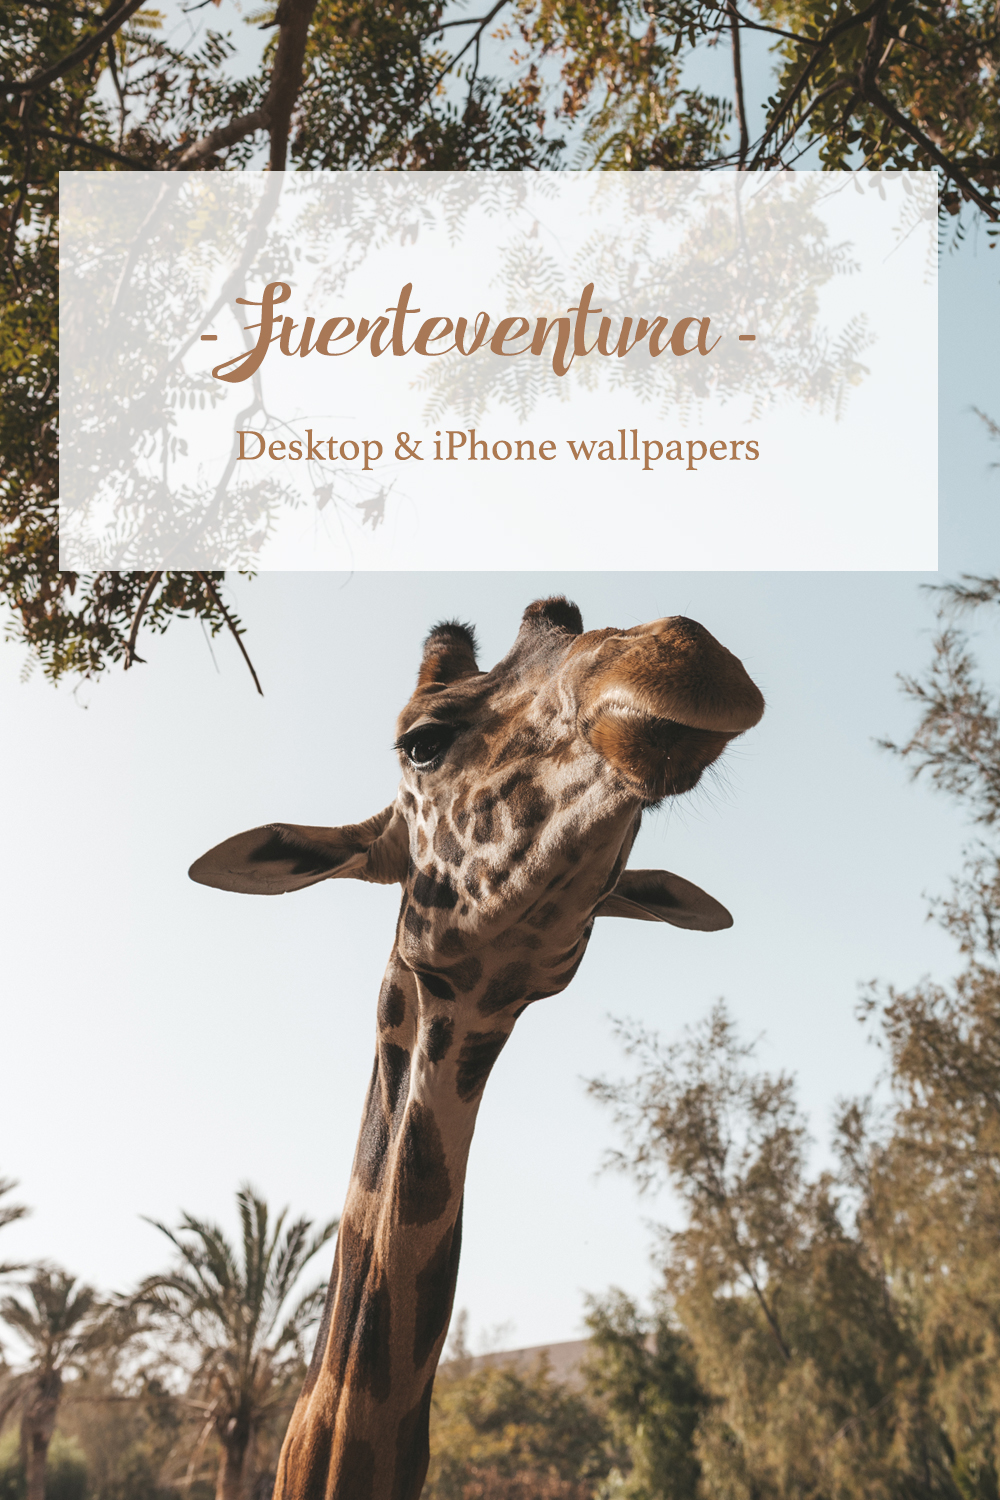 Fuerteventura Spain Canary Islands Desktop & iPhone wallpapers